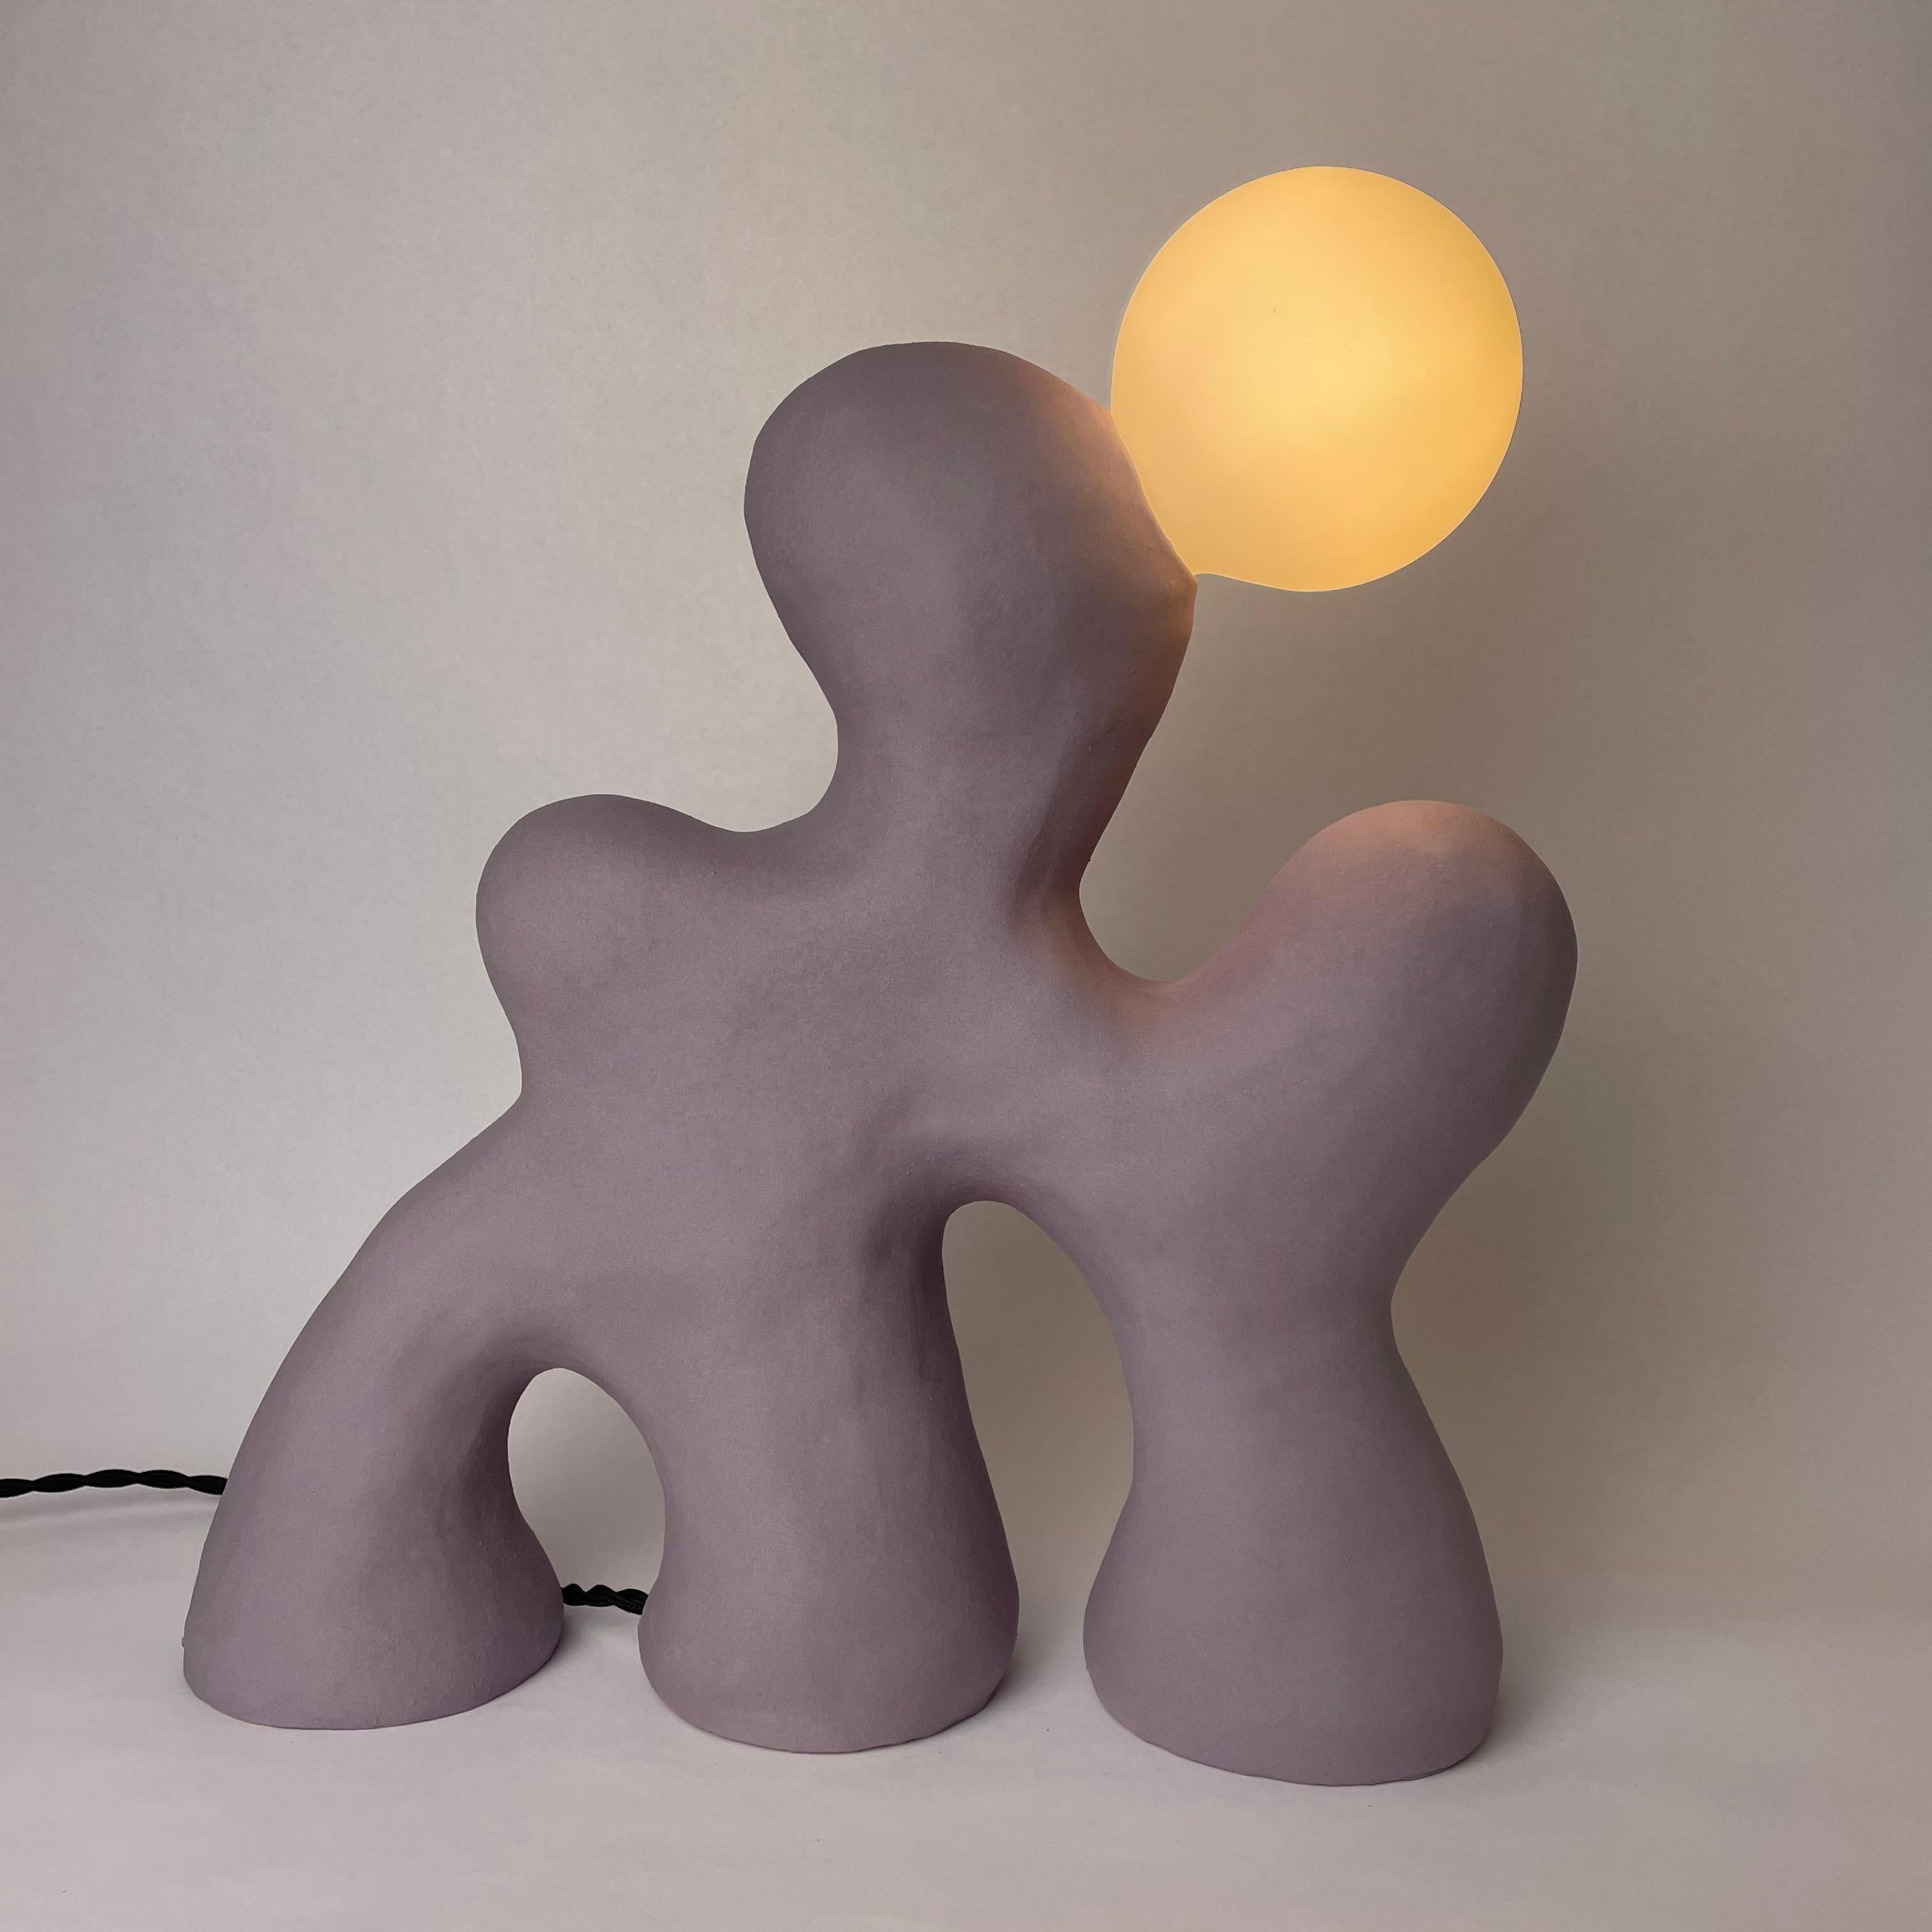 Dreamer lampe von HS Studio
Surreal Real Collection'S
Abmessungen: 35 x 38 x 15cm
MATERIALIEN: Keramik

Hannah Simpson ist eine Keramikkünstlerin mit Sitz in Kent, Großbritannien. Mit ihrer Leidenschaft für die Kreation von Unikaten stellt